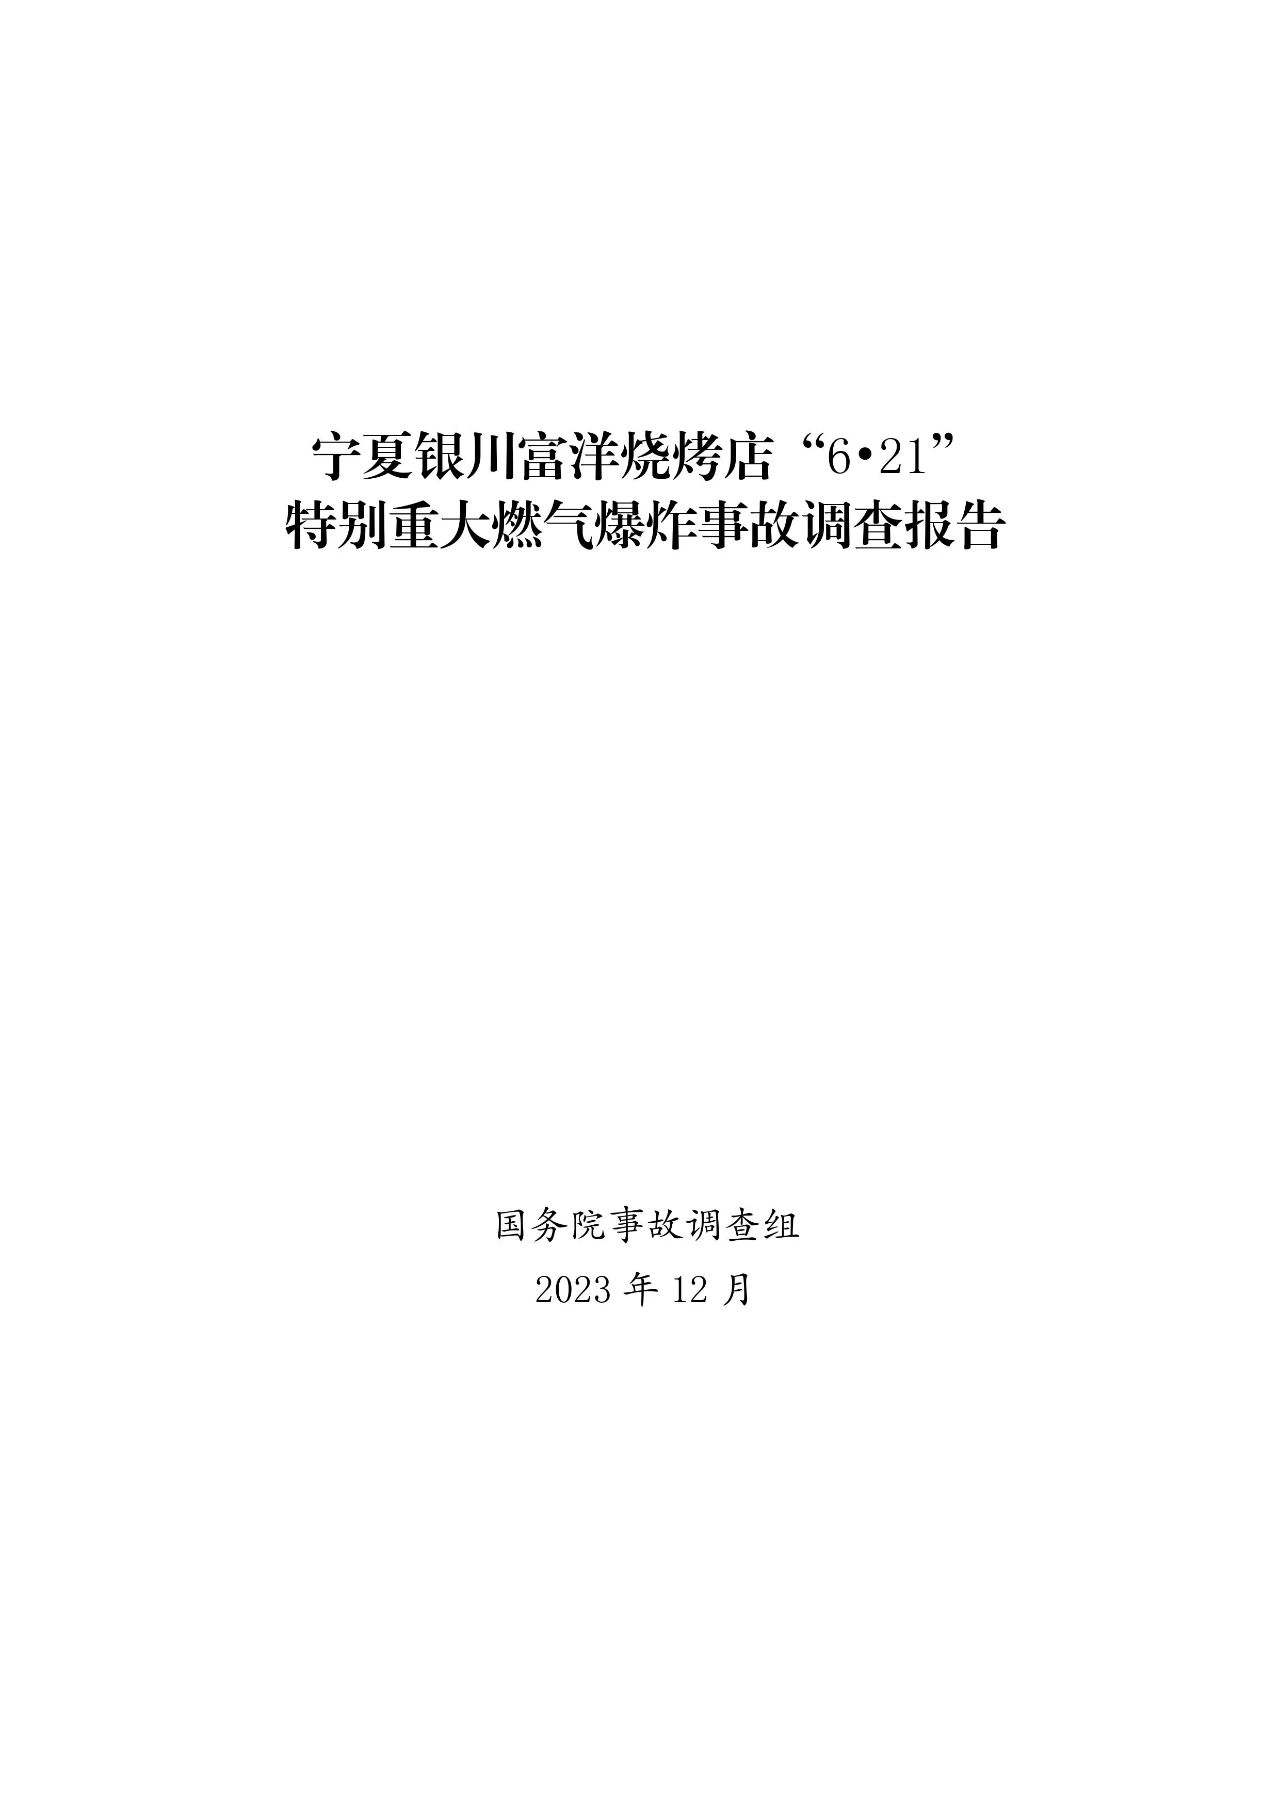 宁夏银川富洋烧烤店“6.21”特别重大燃气爆炸事故调查报告(图1)